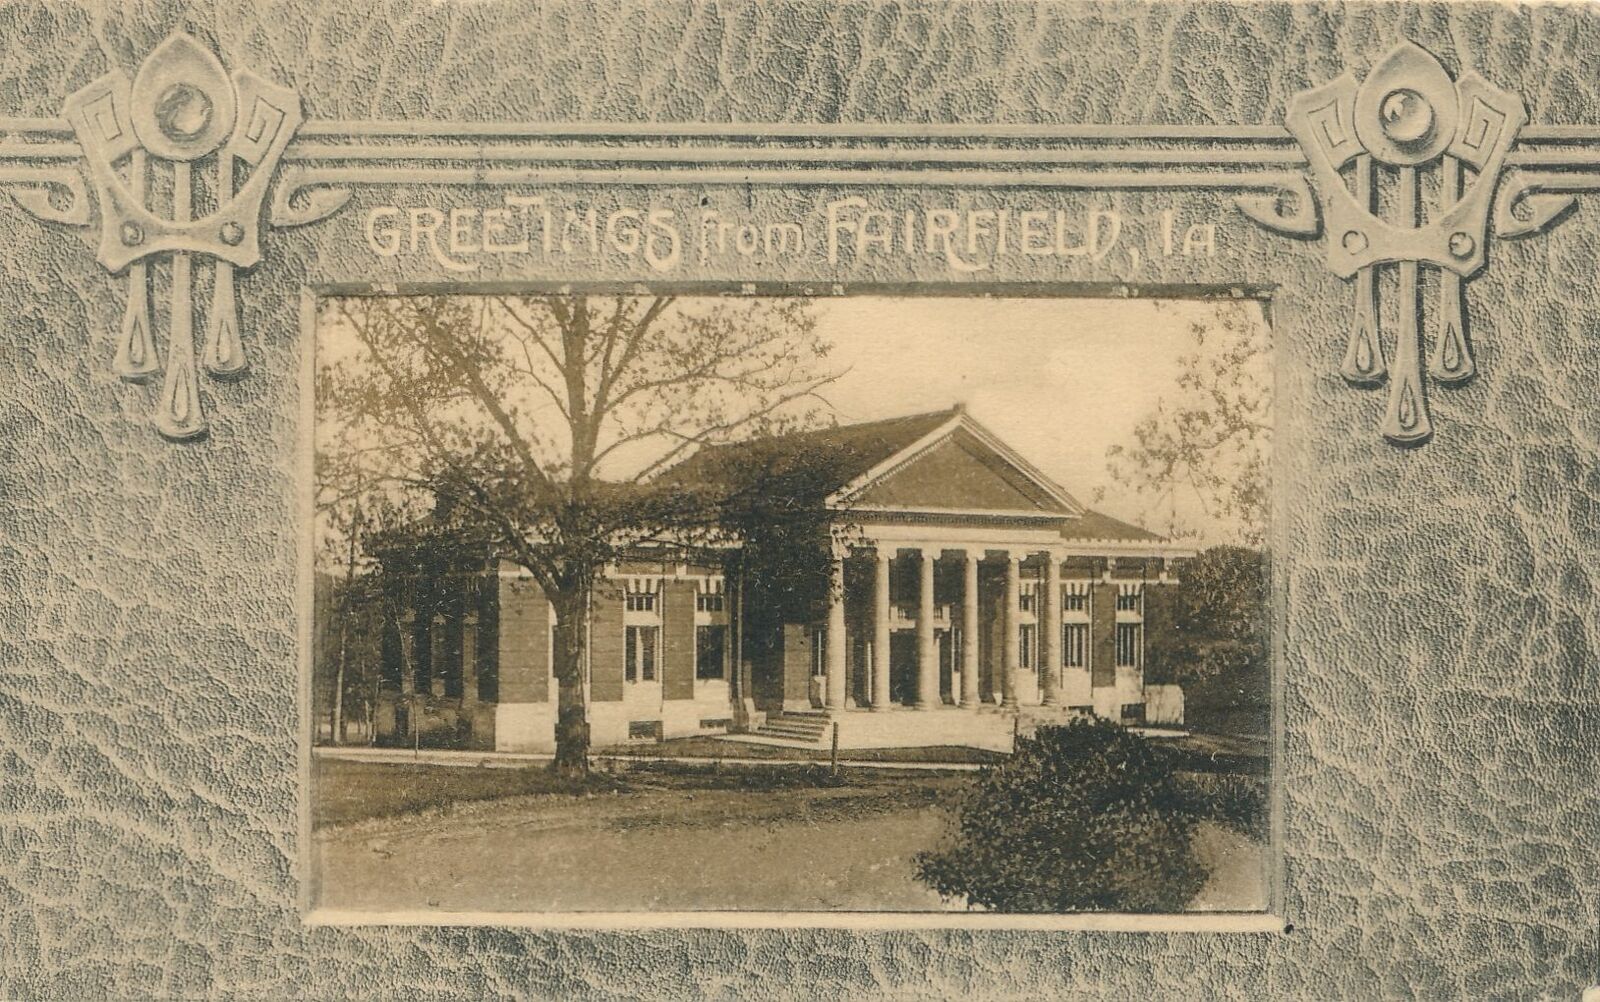 FAIRFIELD IA - Greetings From Fairfield - 1908